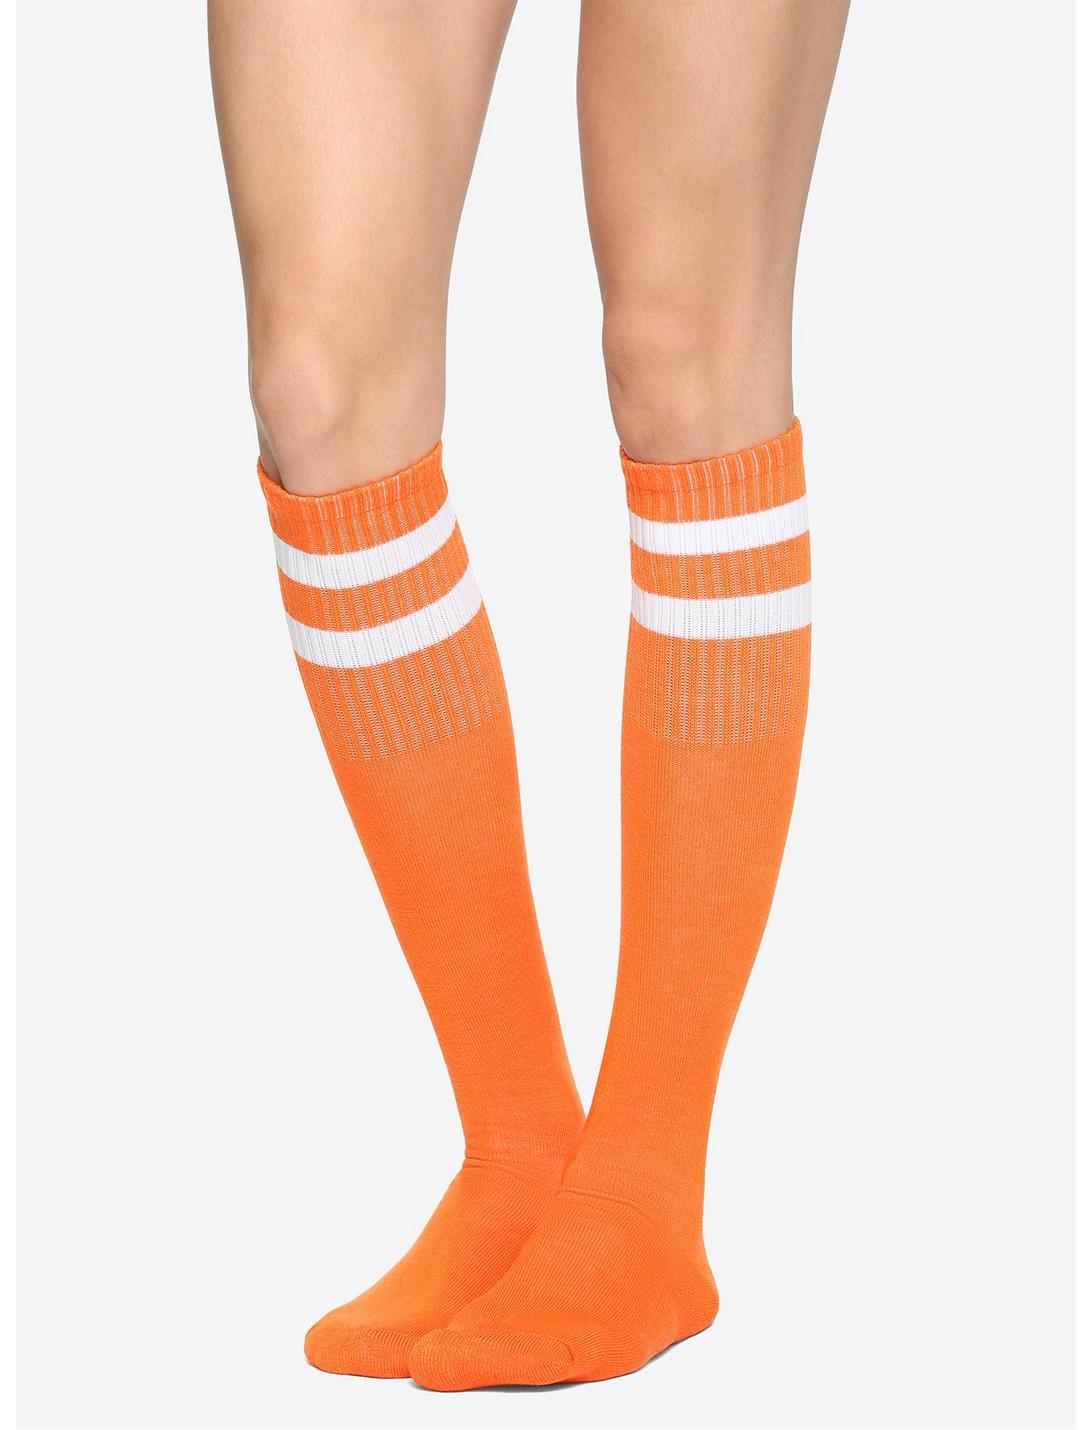 Orange & White Cushioned Knee-High Crew Socks, , hi-res